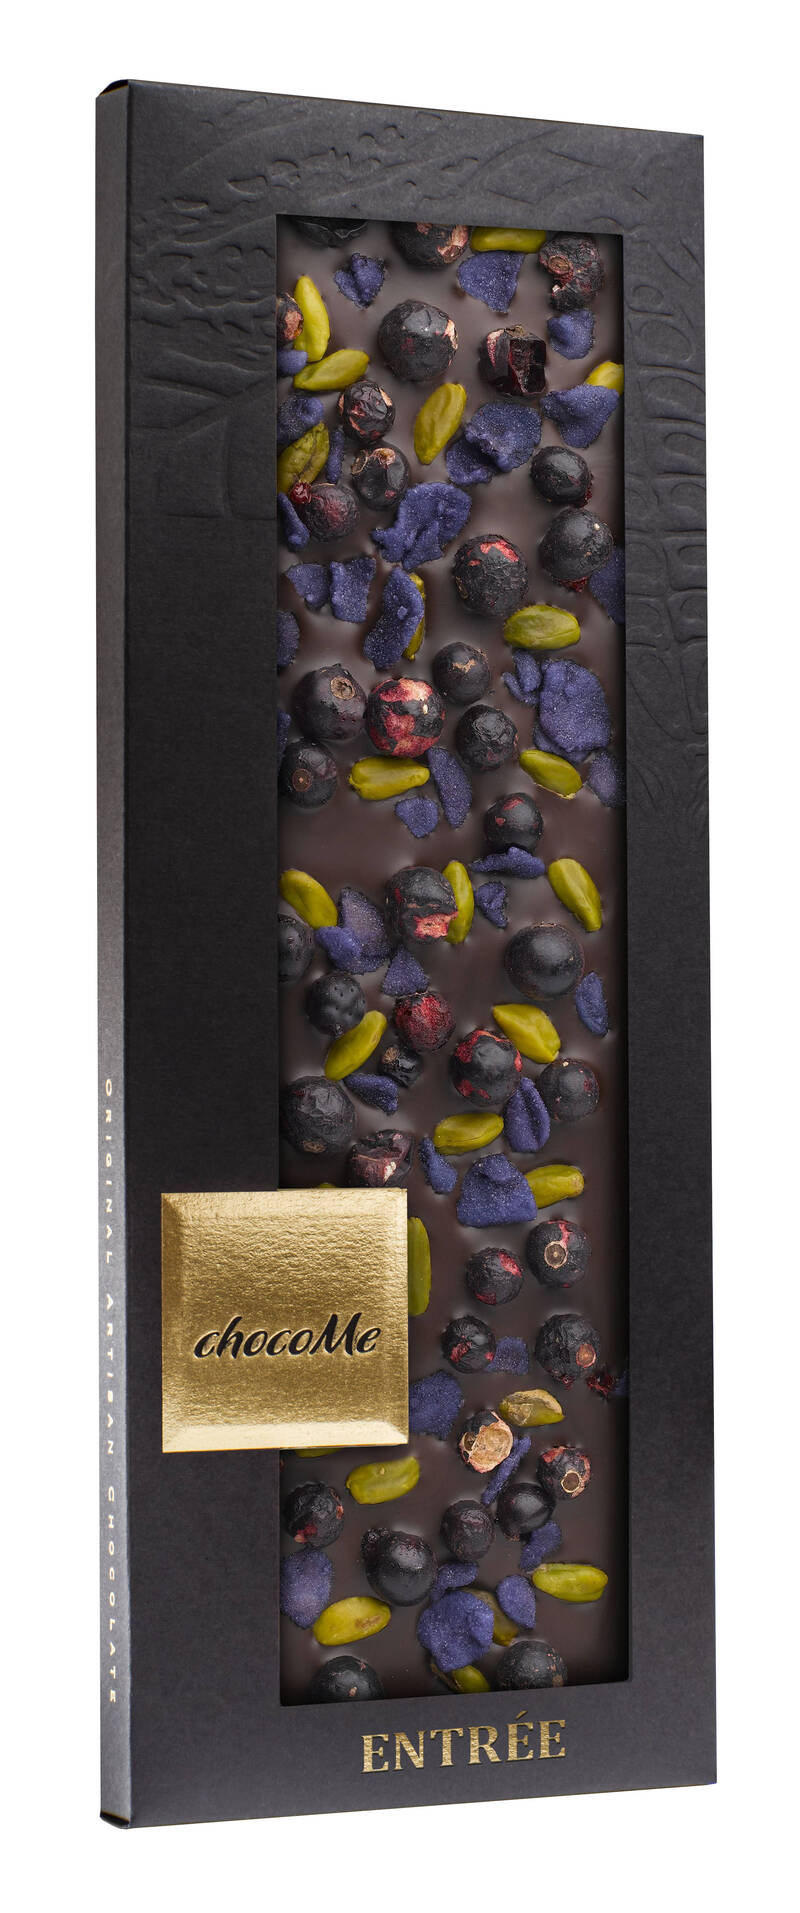 ChocoMe -choklad - Entrée - 110 g. (7 alternativ)